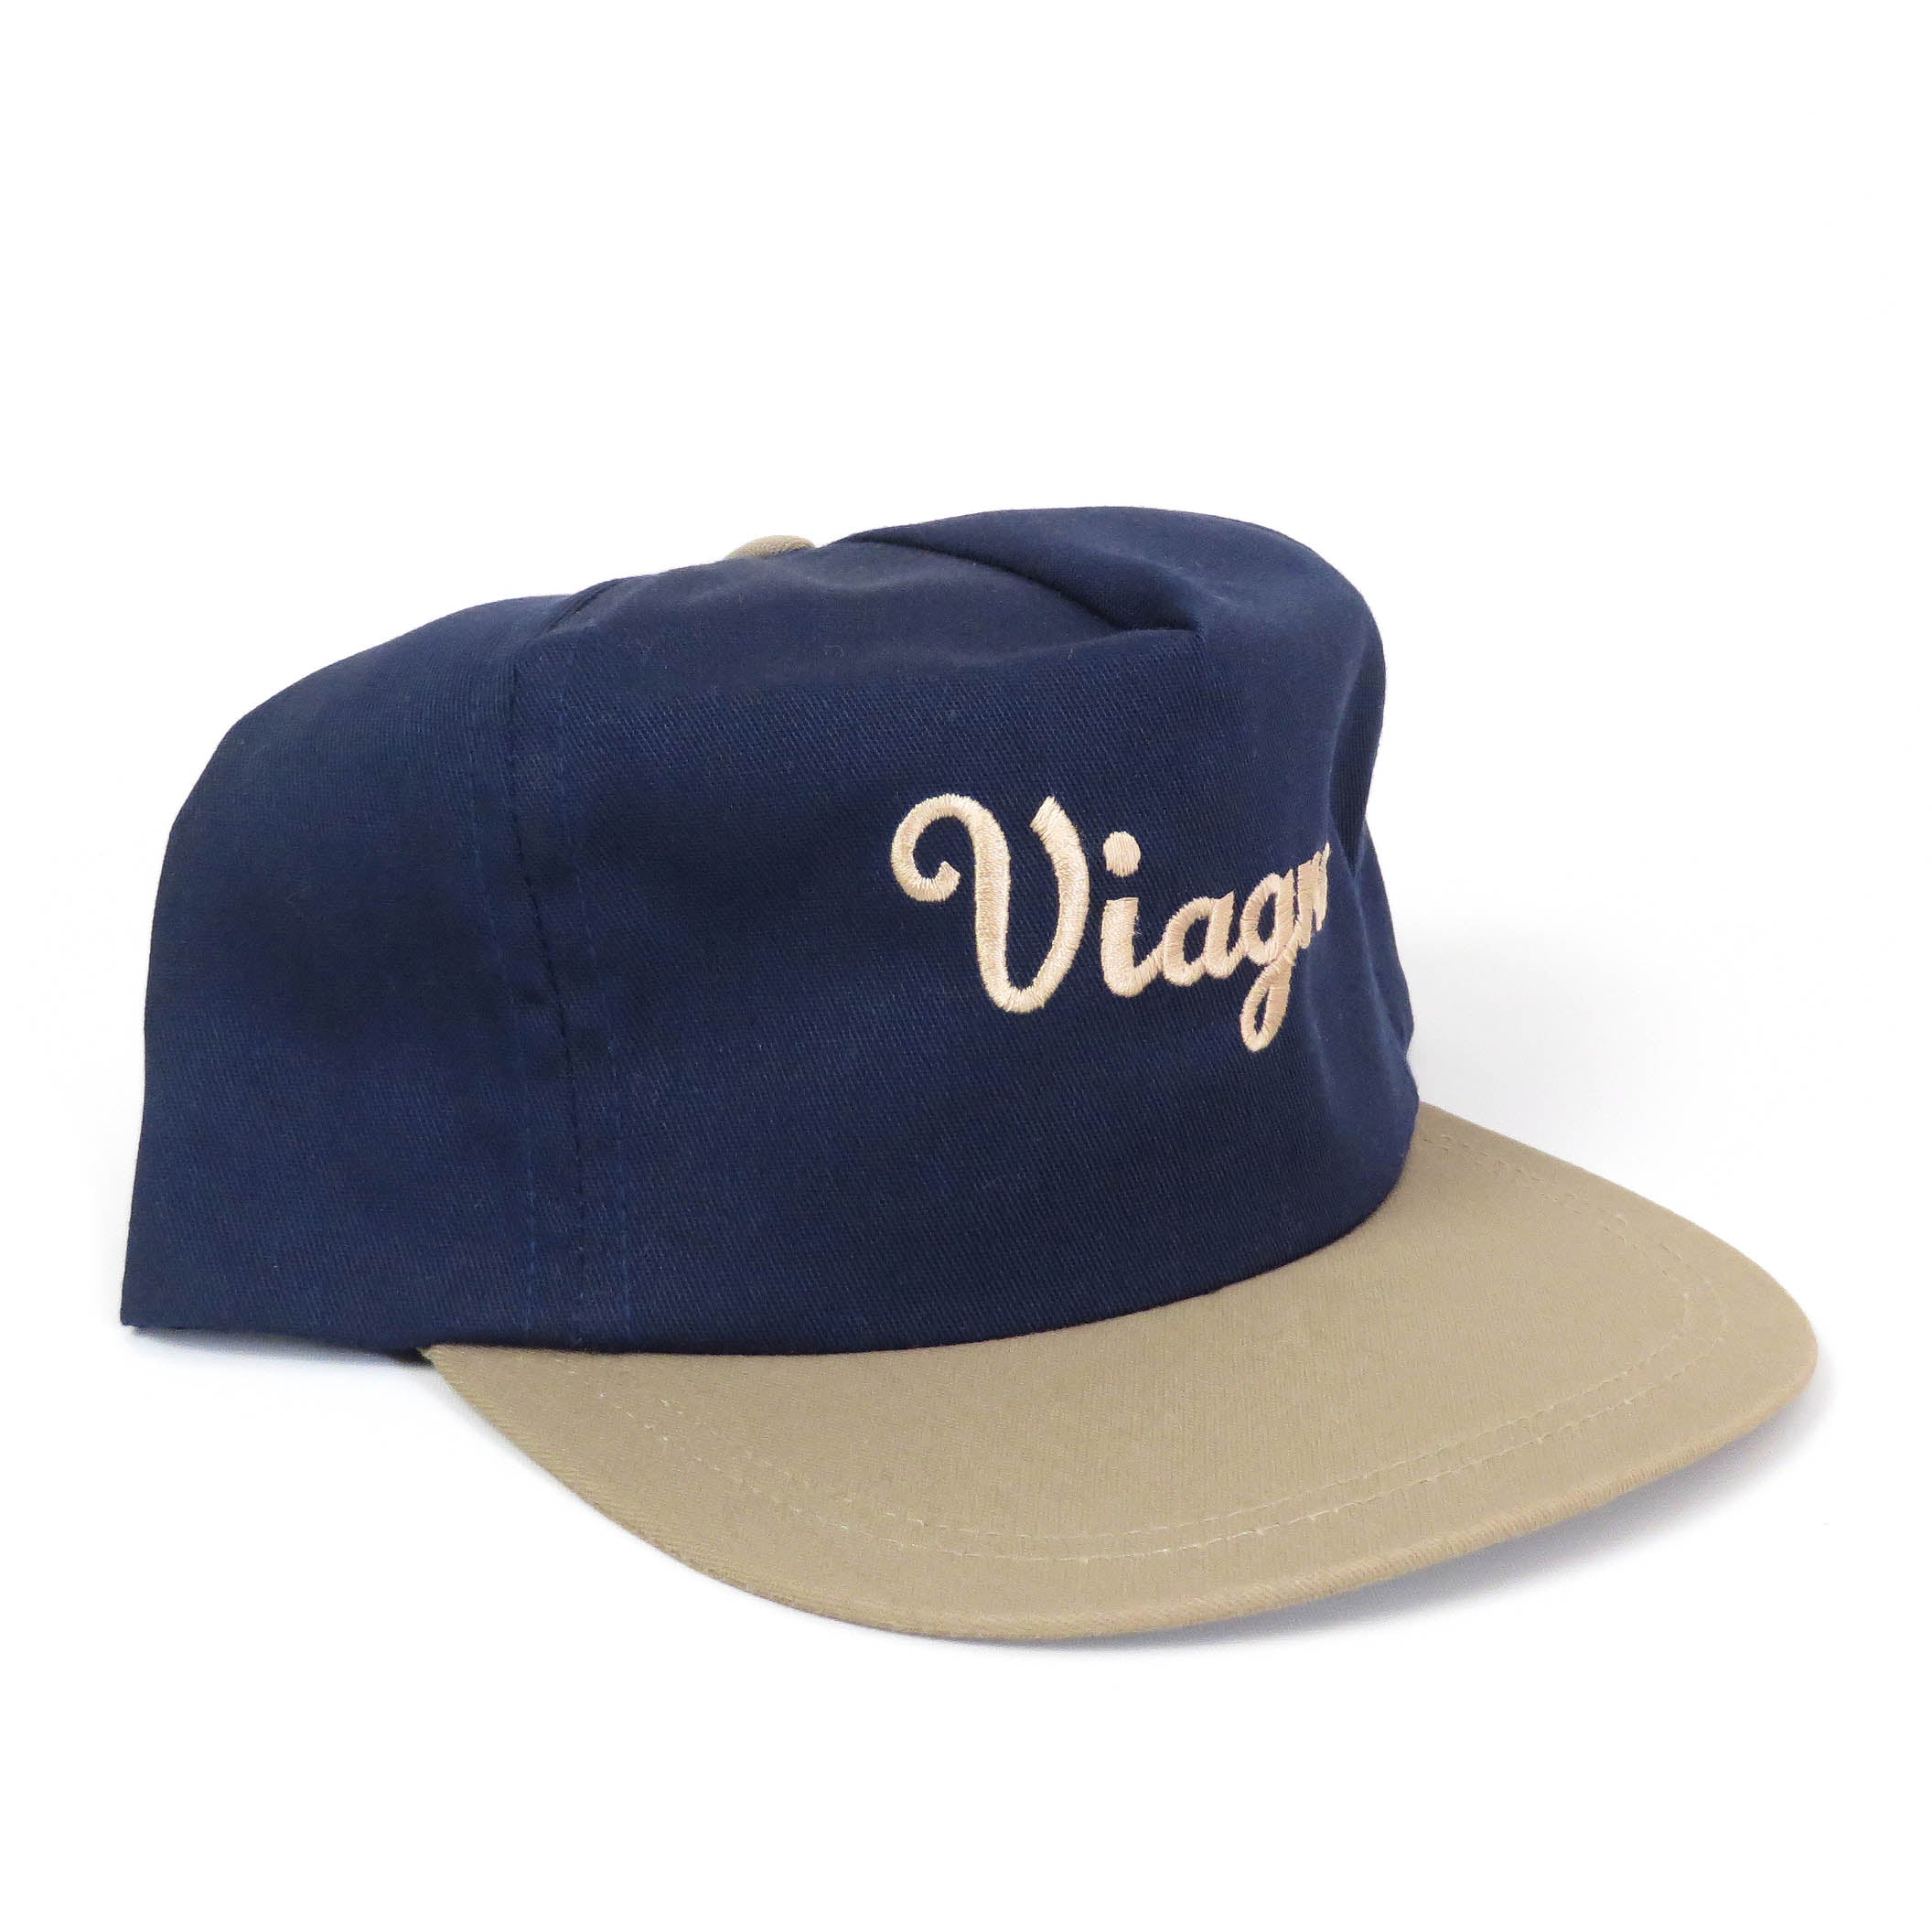 Vintage Viagra Snapback Hat